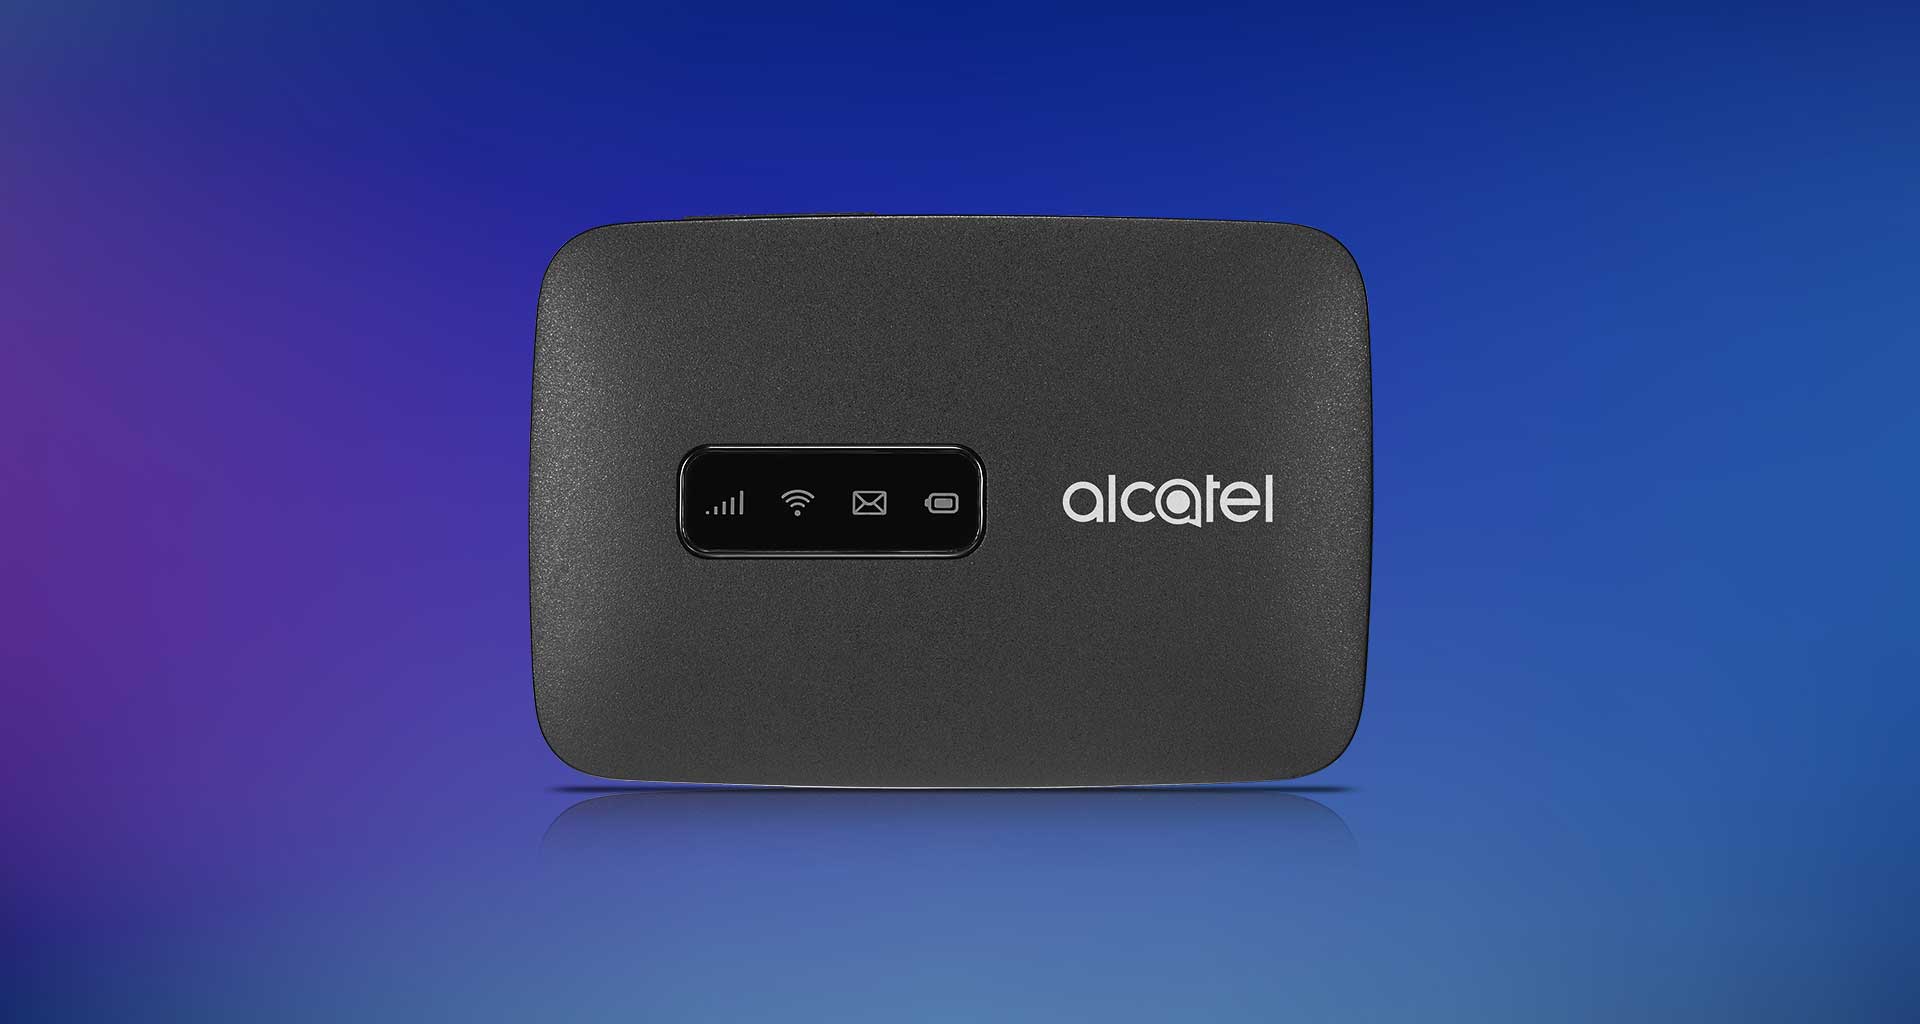 Alcatel 4g. 4g LTE Wi-Fi роутер Alcatel. Роутер Alcatel LINKZONE mw40v. Alcatel WIFI 4g роутер. Alcatel LINKZONE mw40v батарея.